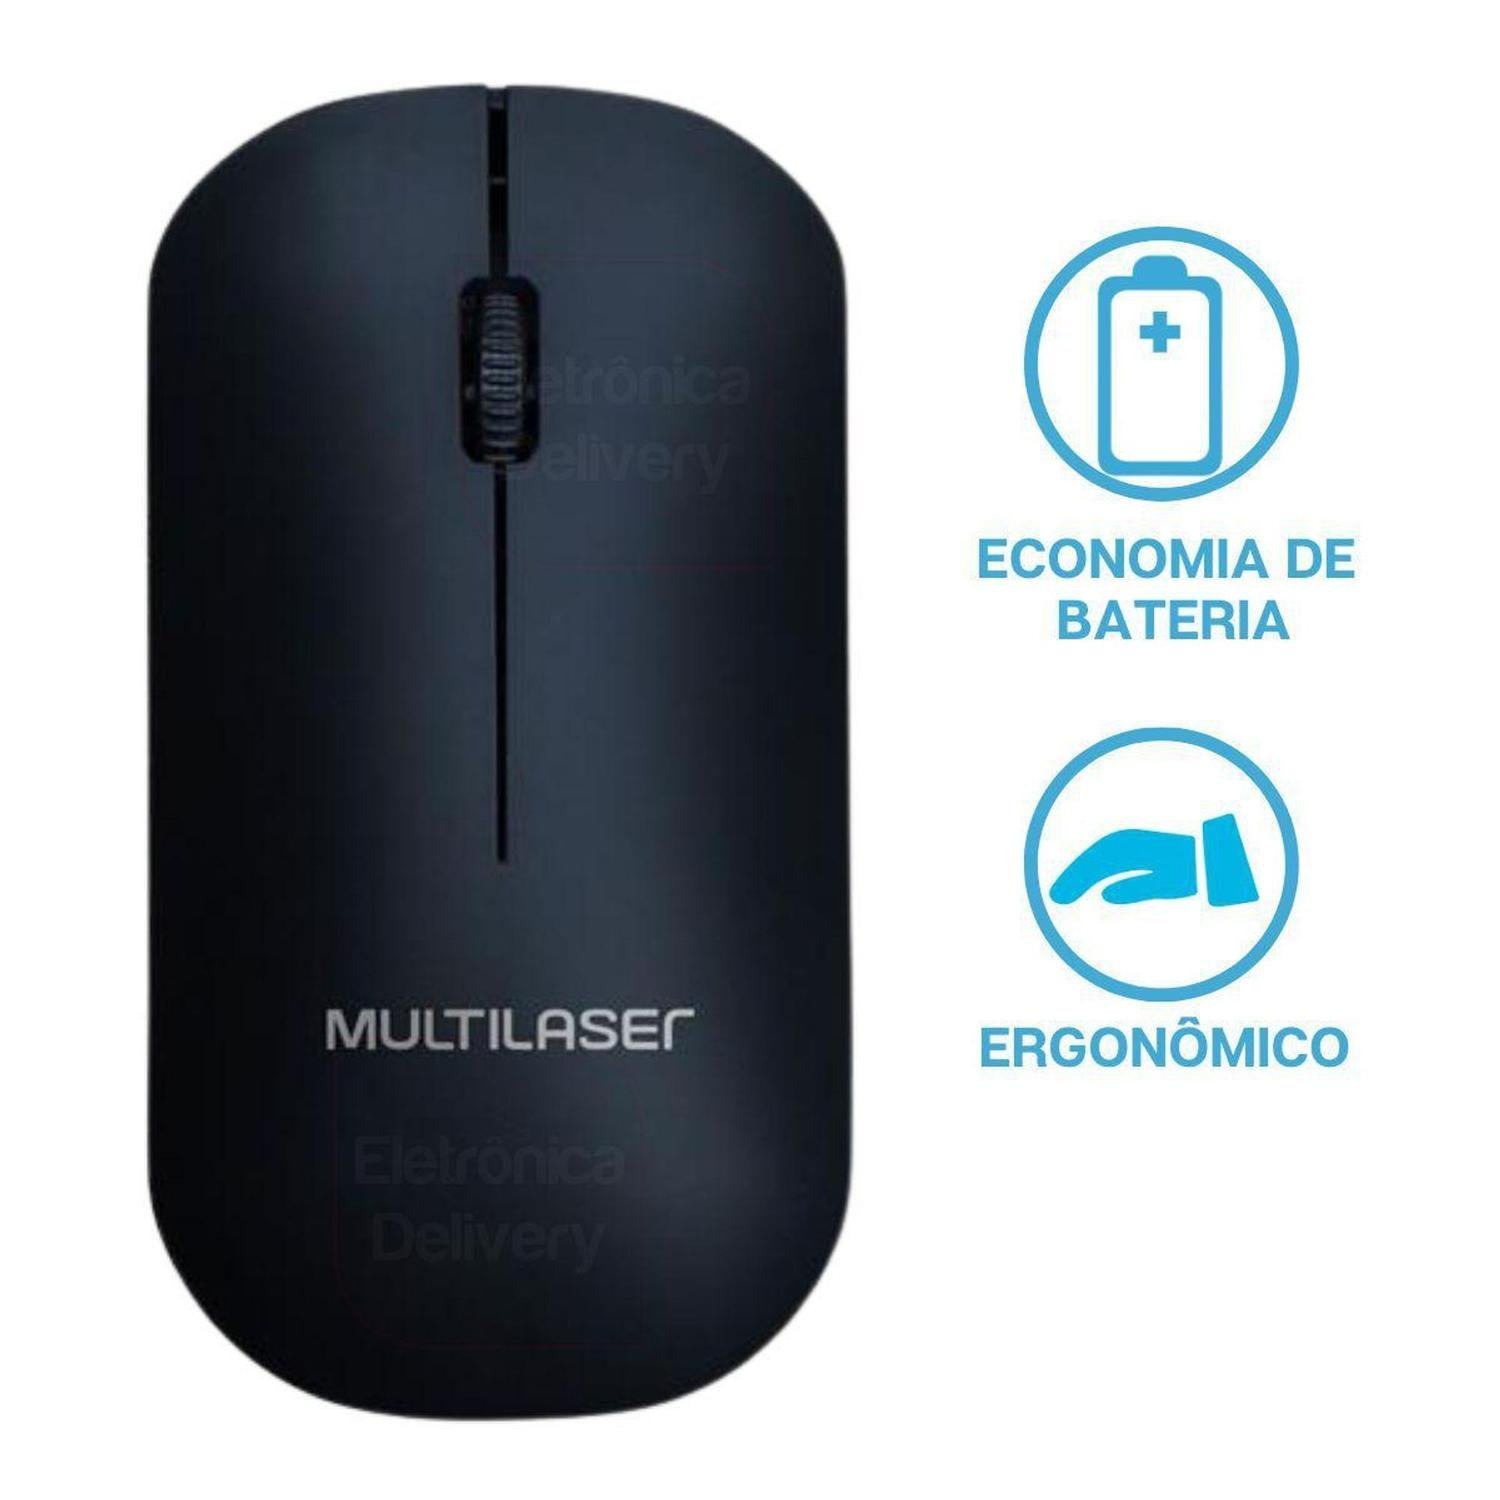 Mouse Sem Fio Ergonomico 2.4 Ghz 1200 Dpi Preto Usb Economiza Pilha Power Save MO307 Multilaser - 4